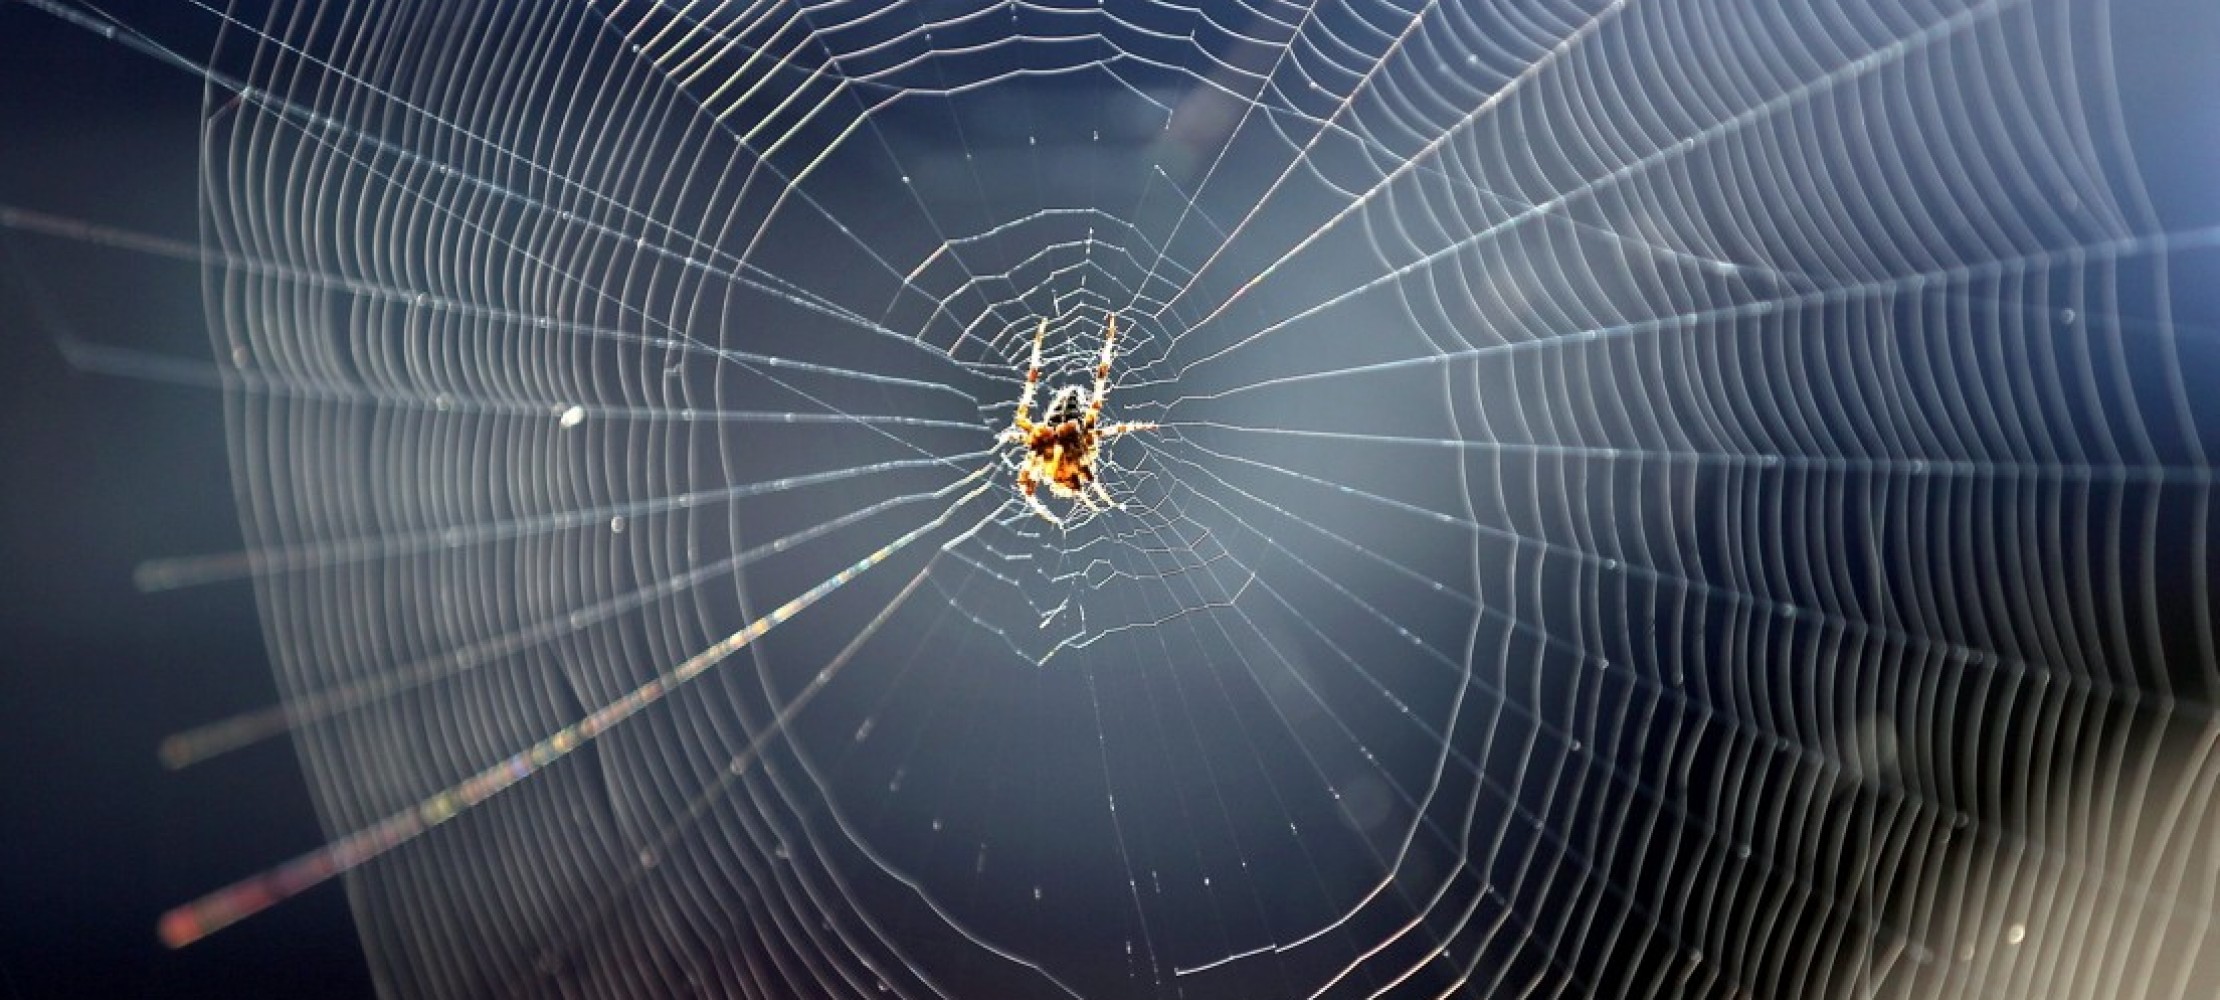 Tolle Sprechspiele für Kindergeburtstage: Das Spinnennetz